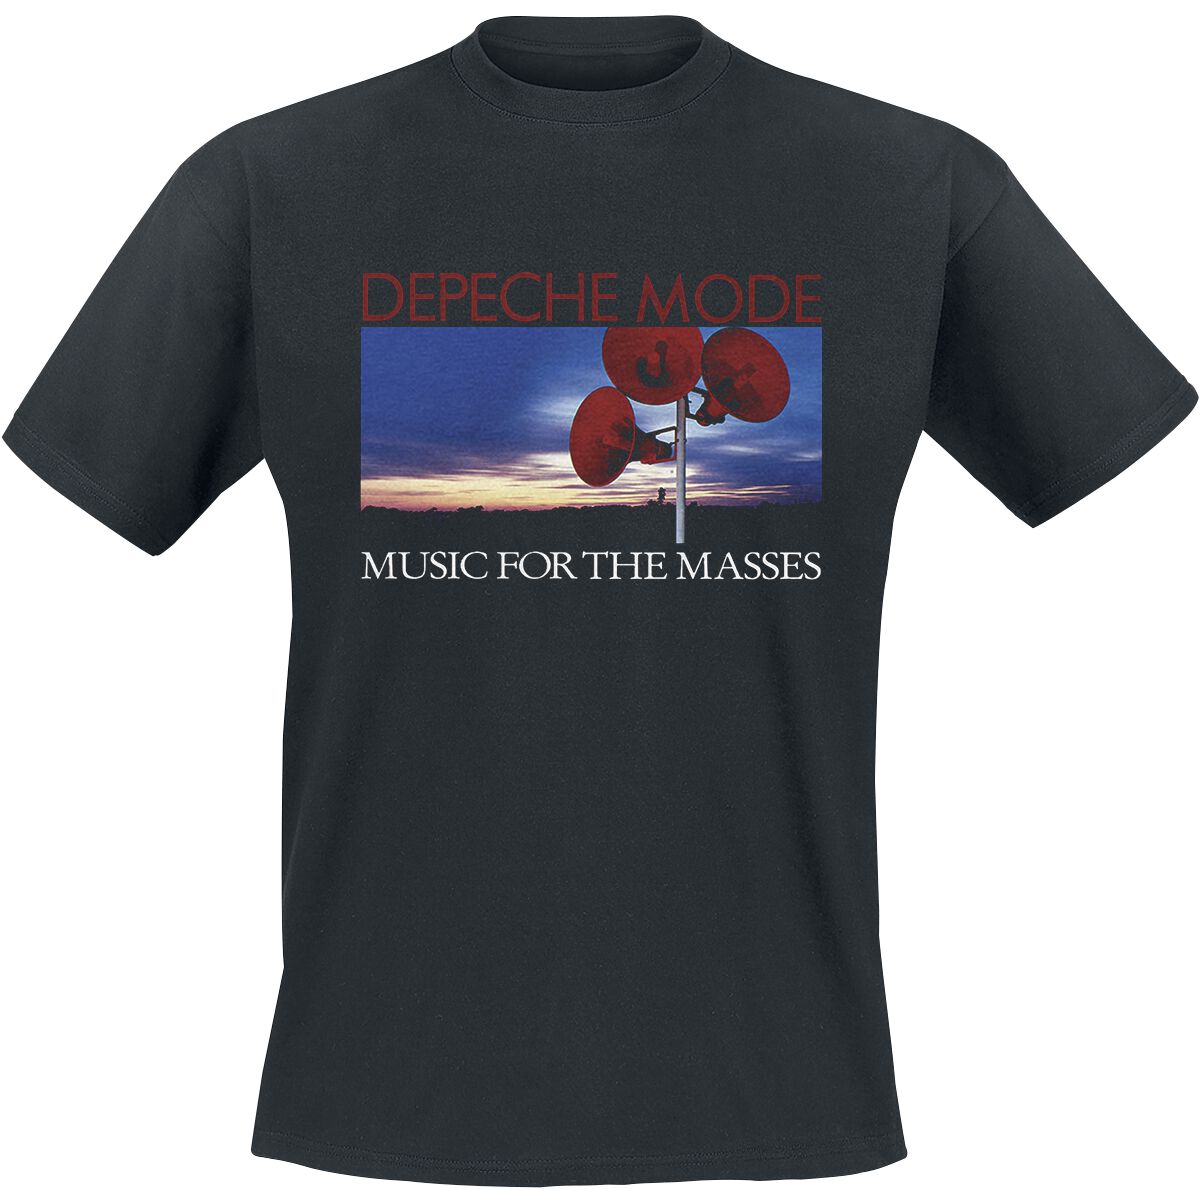 Depeche Mode T-Shirt - Music for the masses - S bis 4XL - für Männer - Größe XXL - schwarz  - Lizenziertes Merchandise!